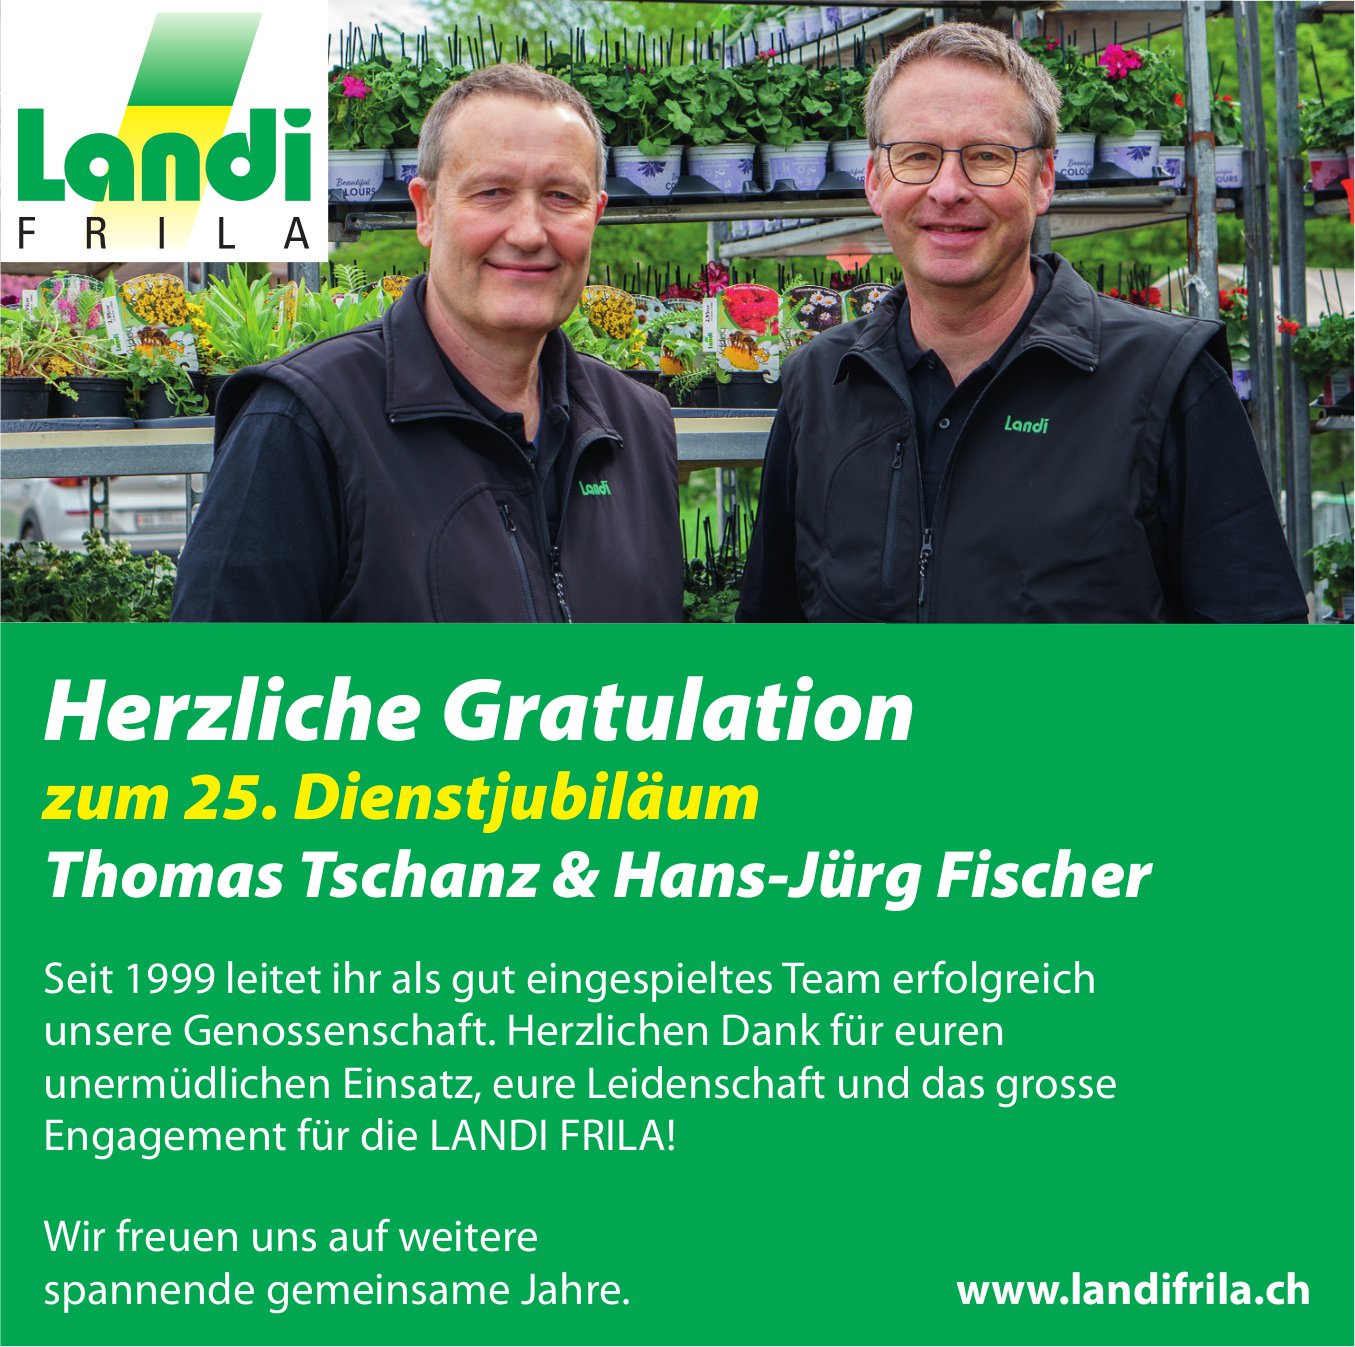 Landi Frila, 25. Dienstjubiläum Thomas Tschanz & Hans-Jürg Fischer